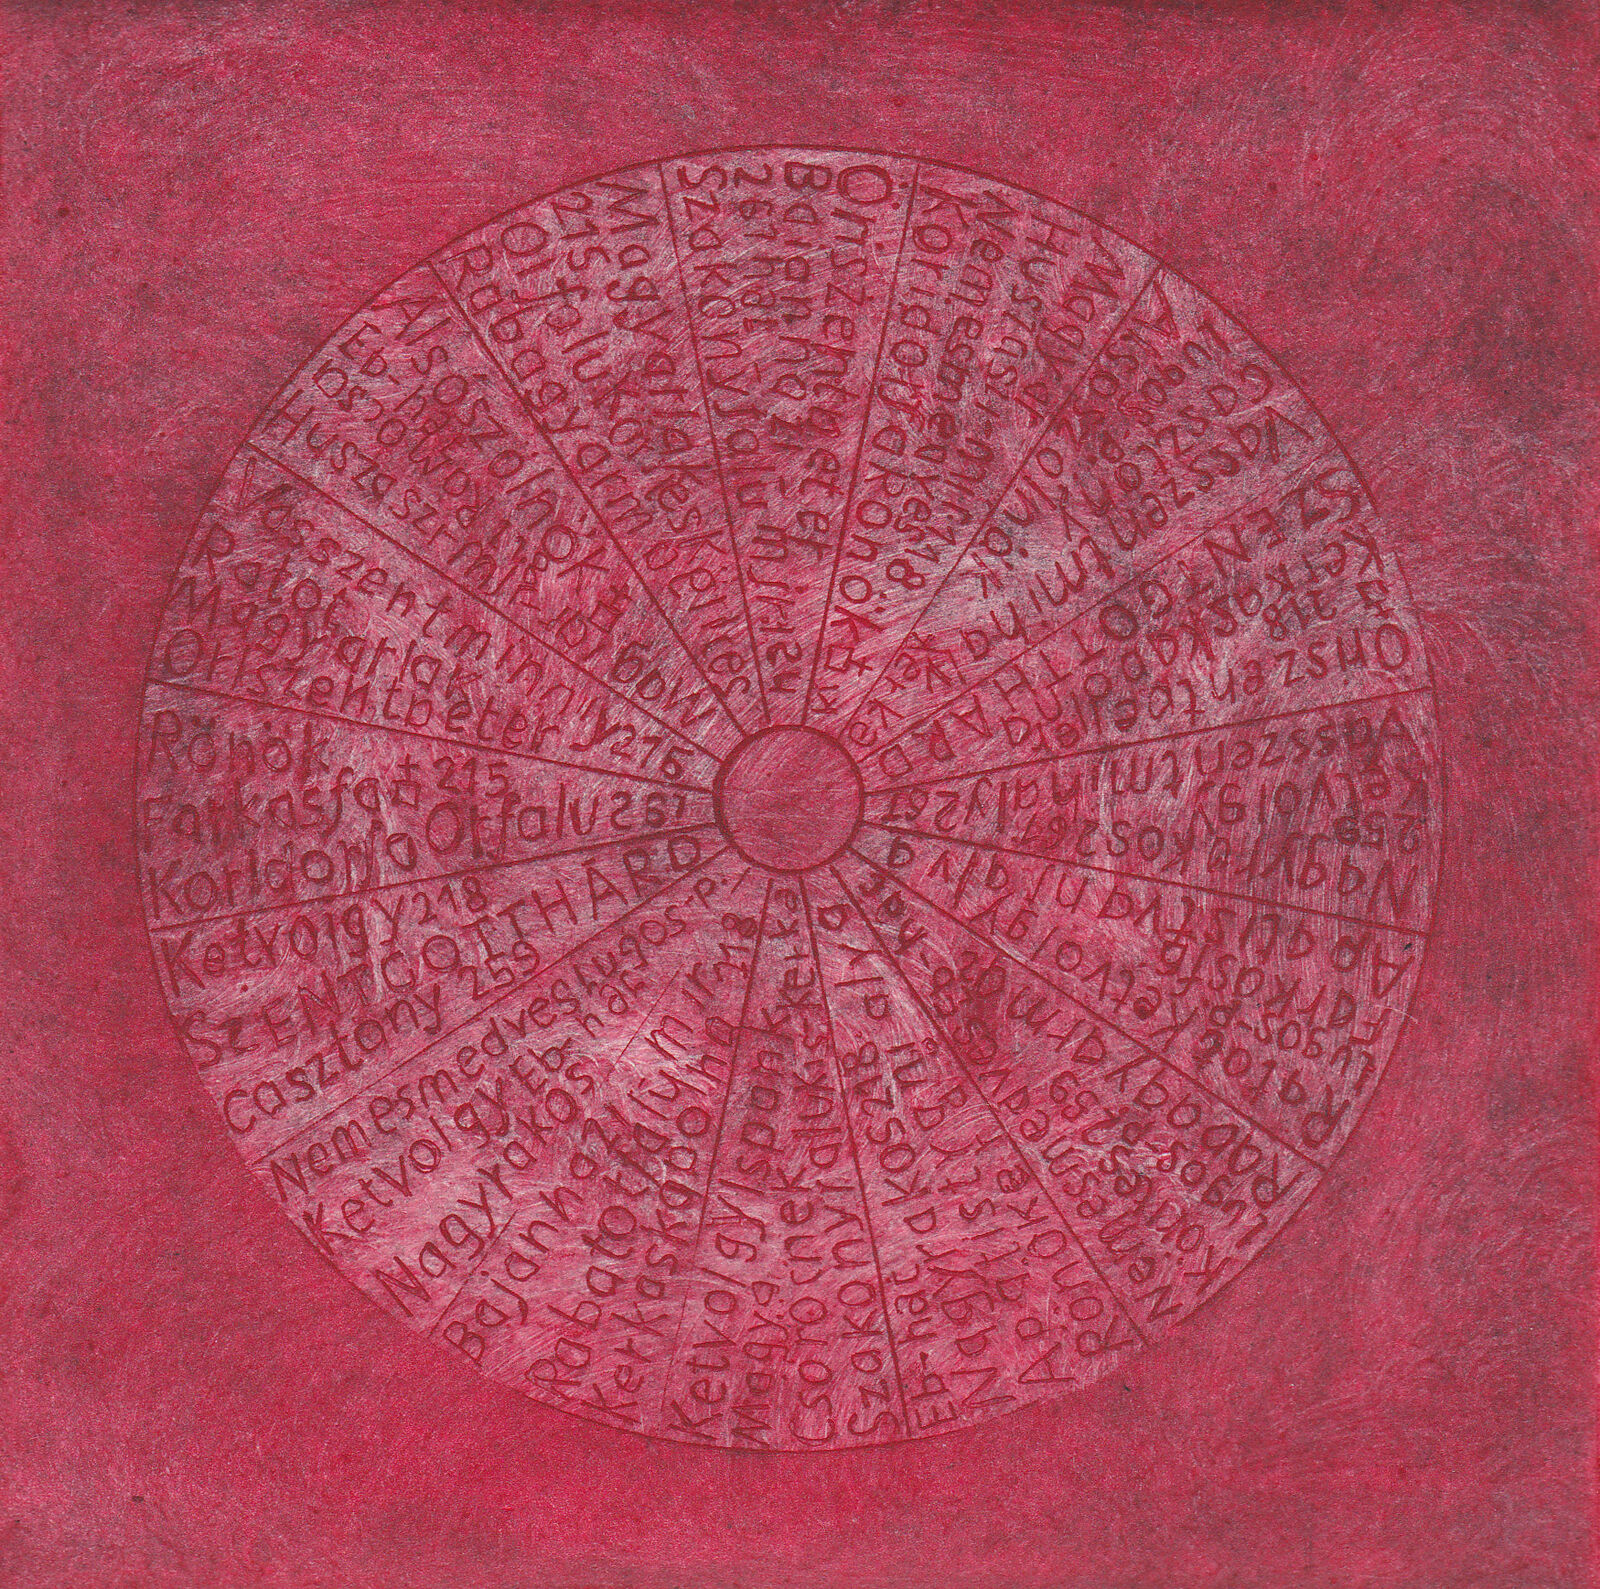 Alsószölnök, Aquatinta-Radierung, 27 x 20 cm, 2014 © Agnes Christine Katschner